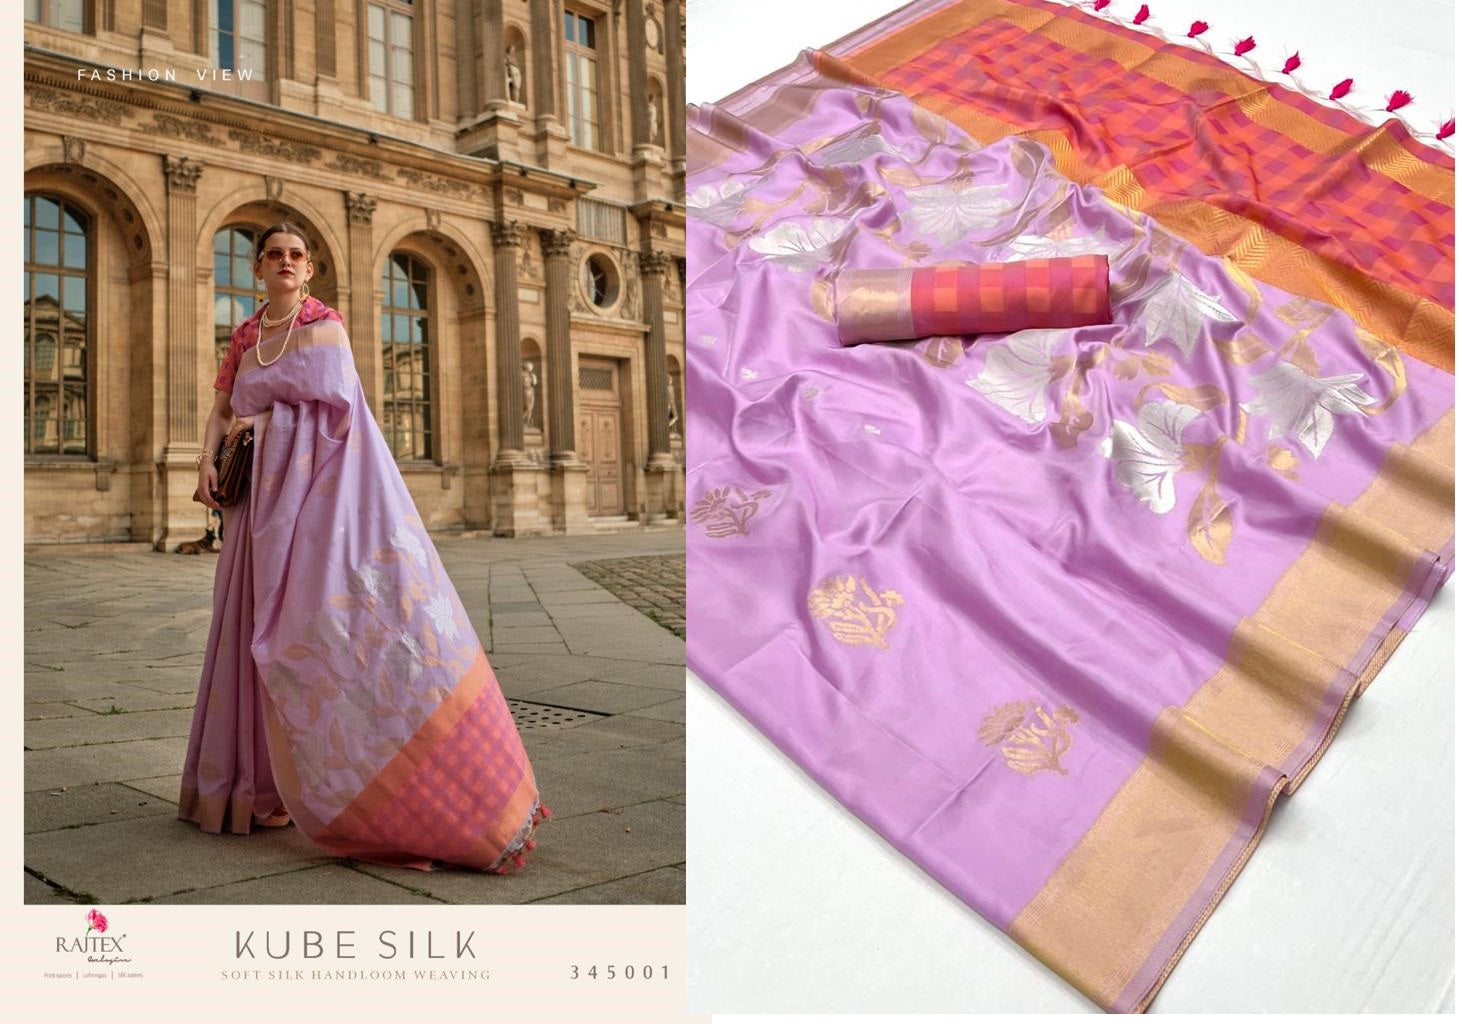 Kube Silk Rajtex Soft Silk Sarees